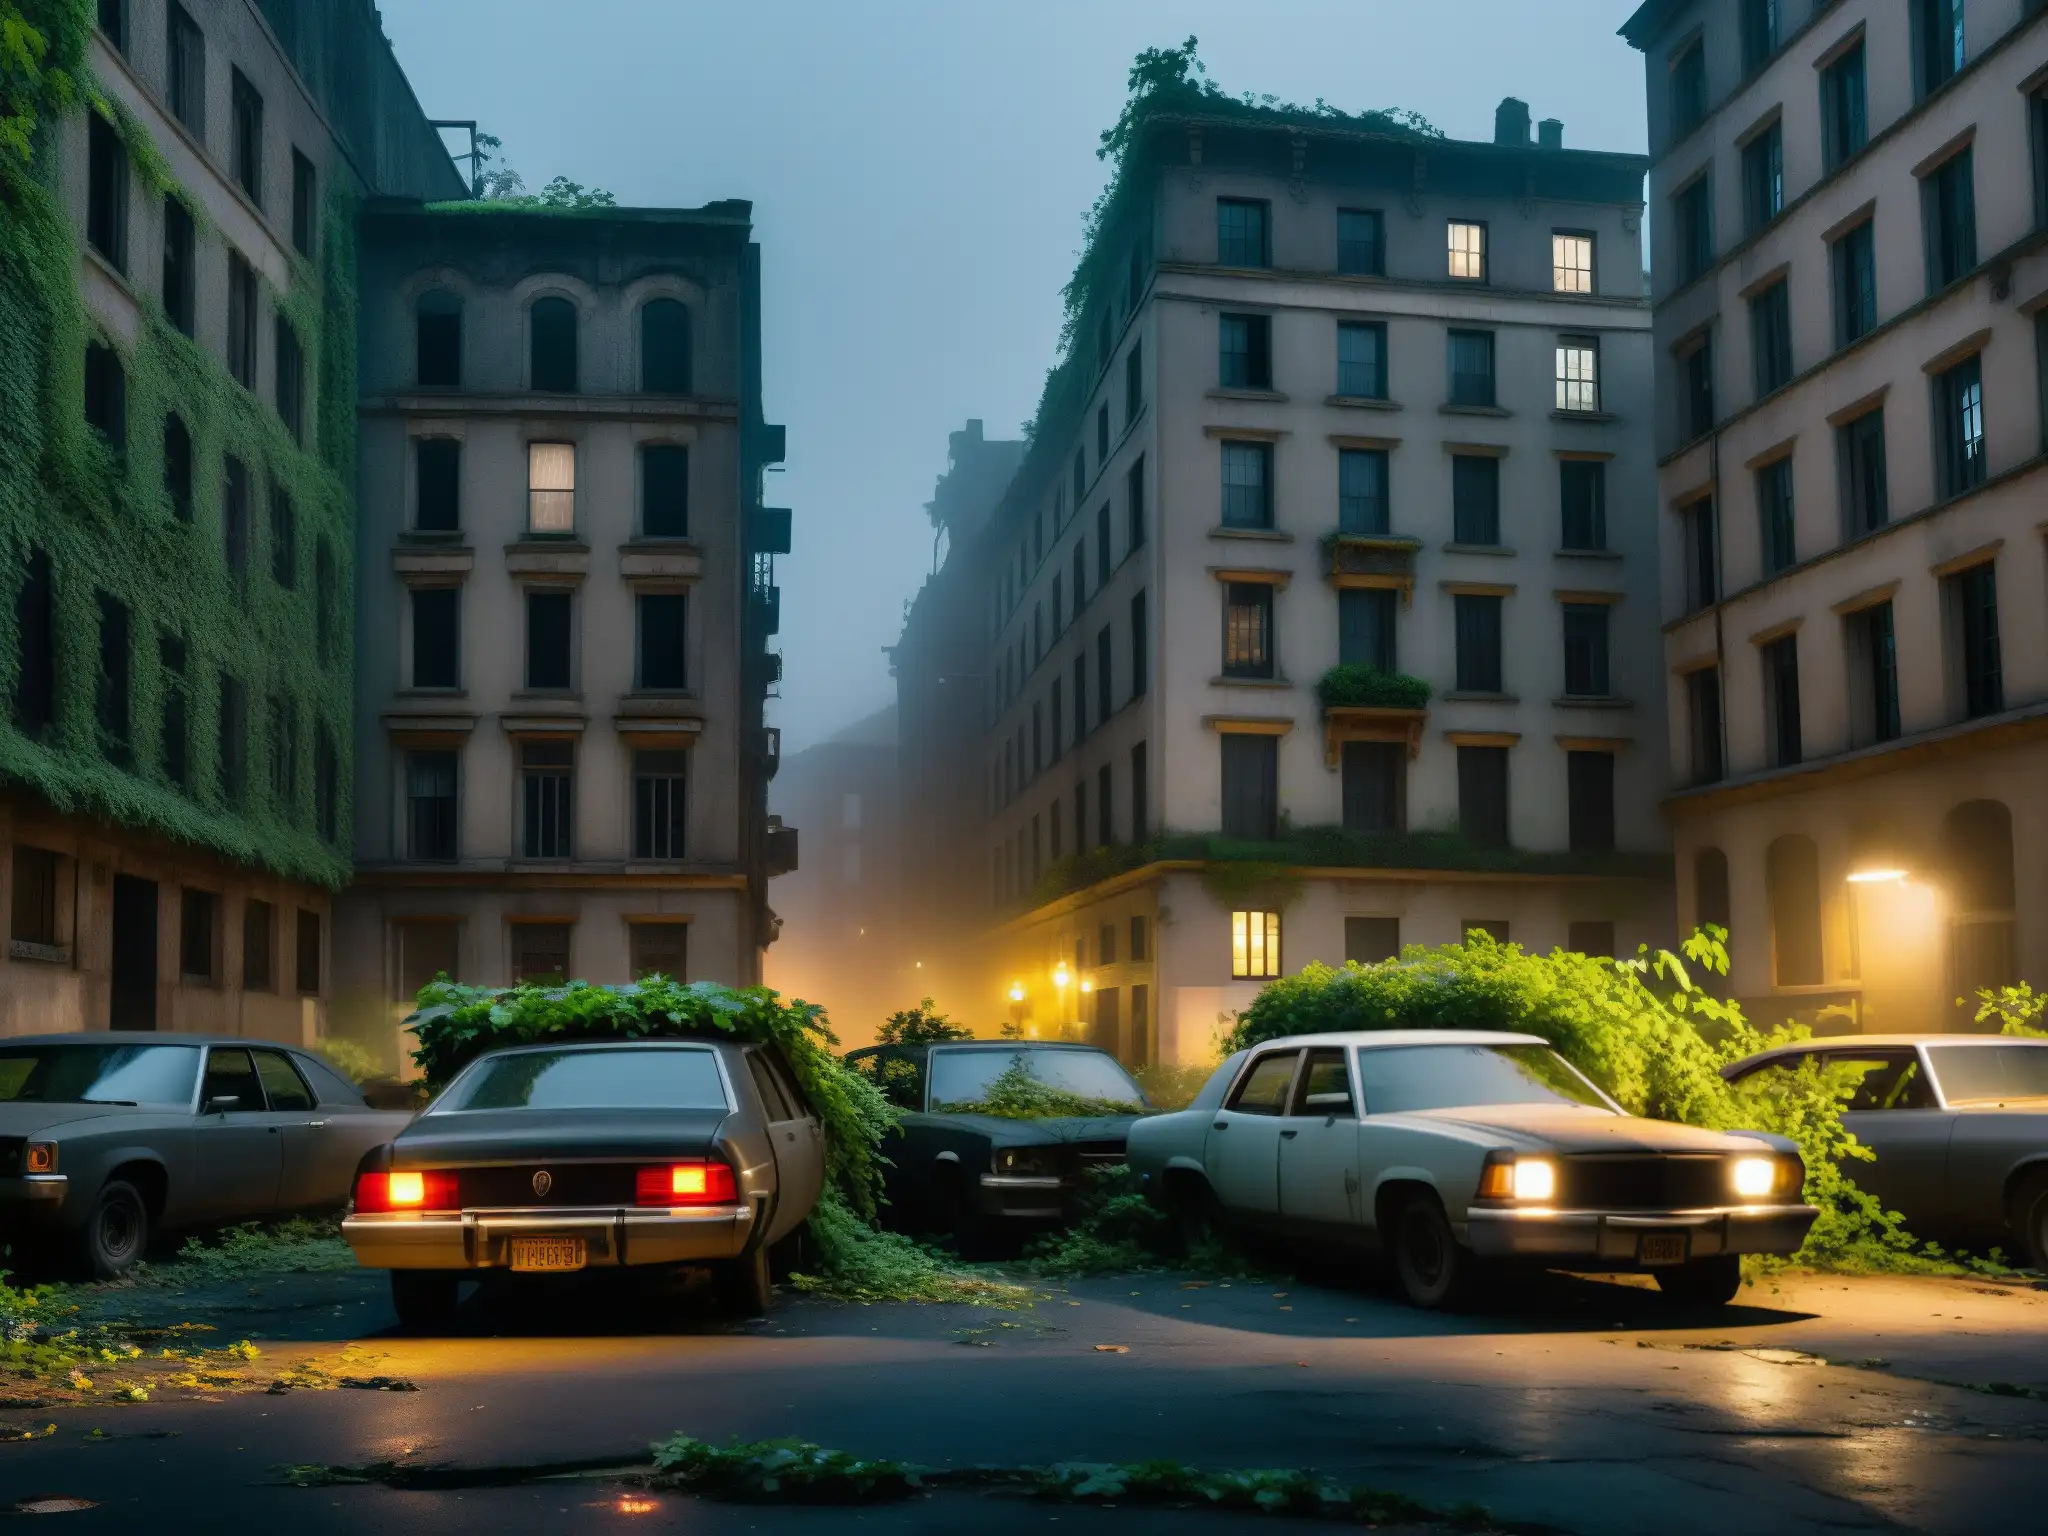 Una calle abandonada de una ciudad en la noche, con edificios en ruinas y plantas creciendo